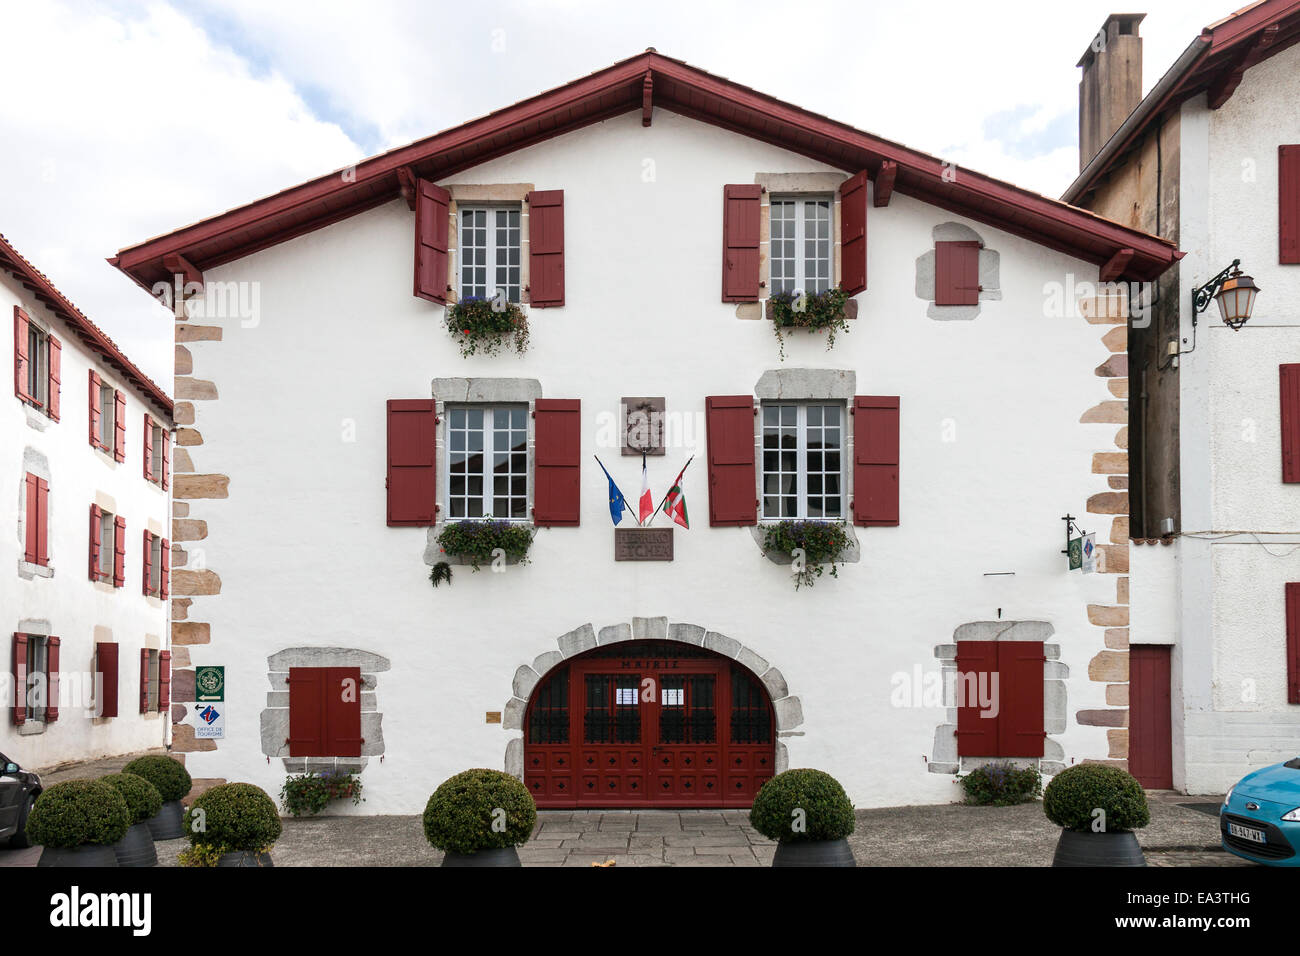 Town Hall, Ainhoa, France Stock Photo